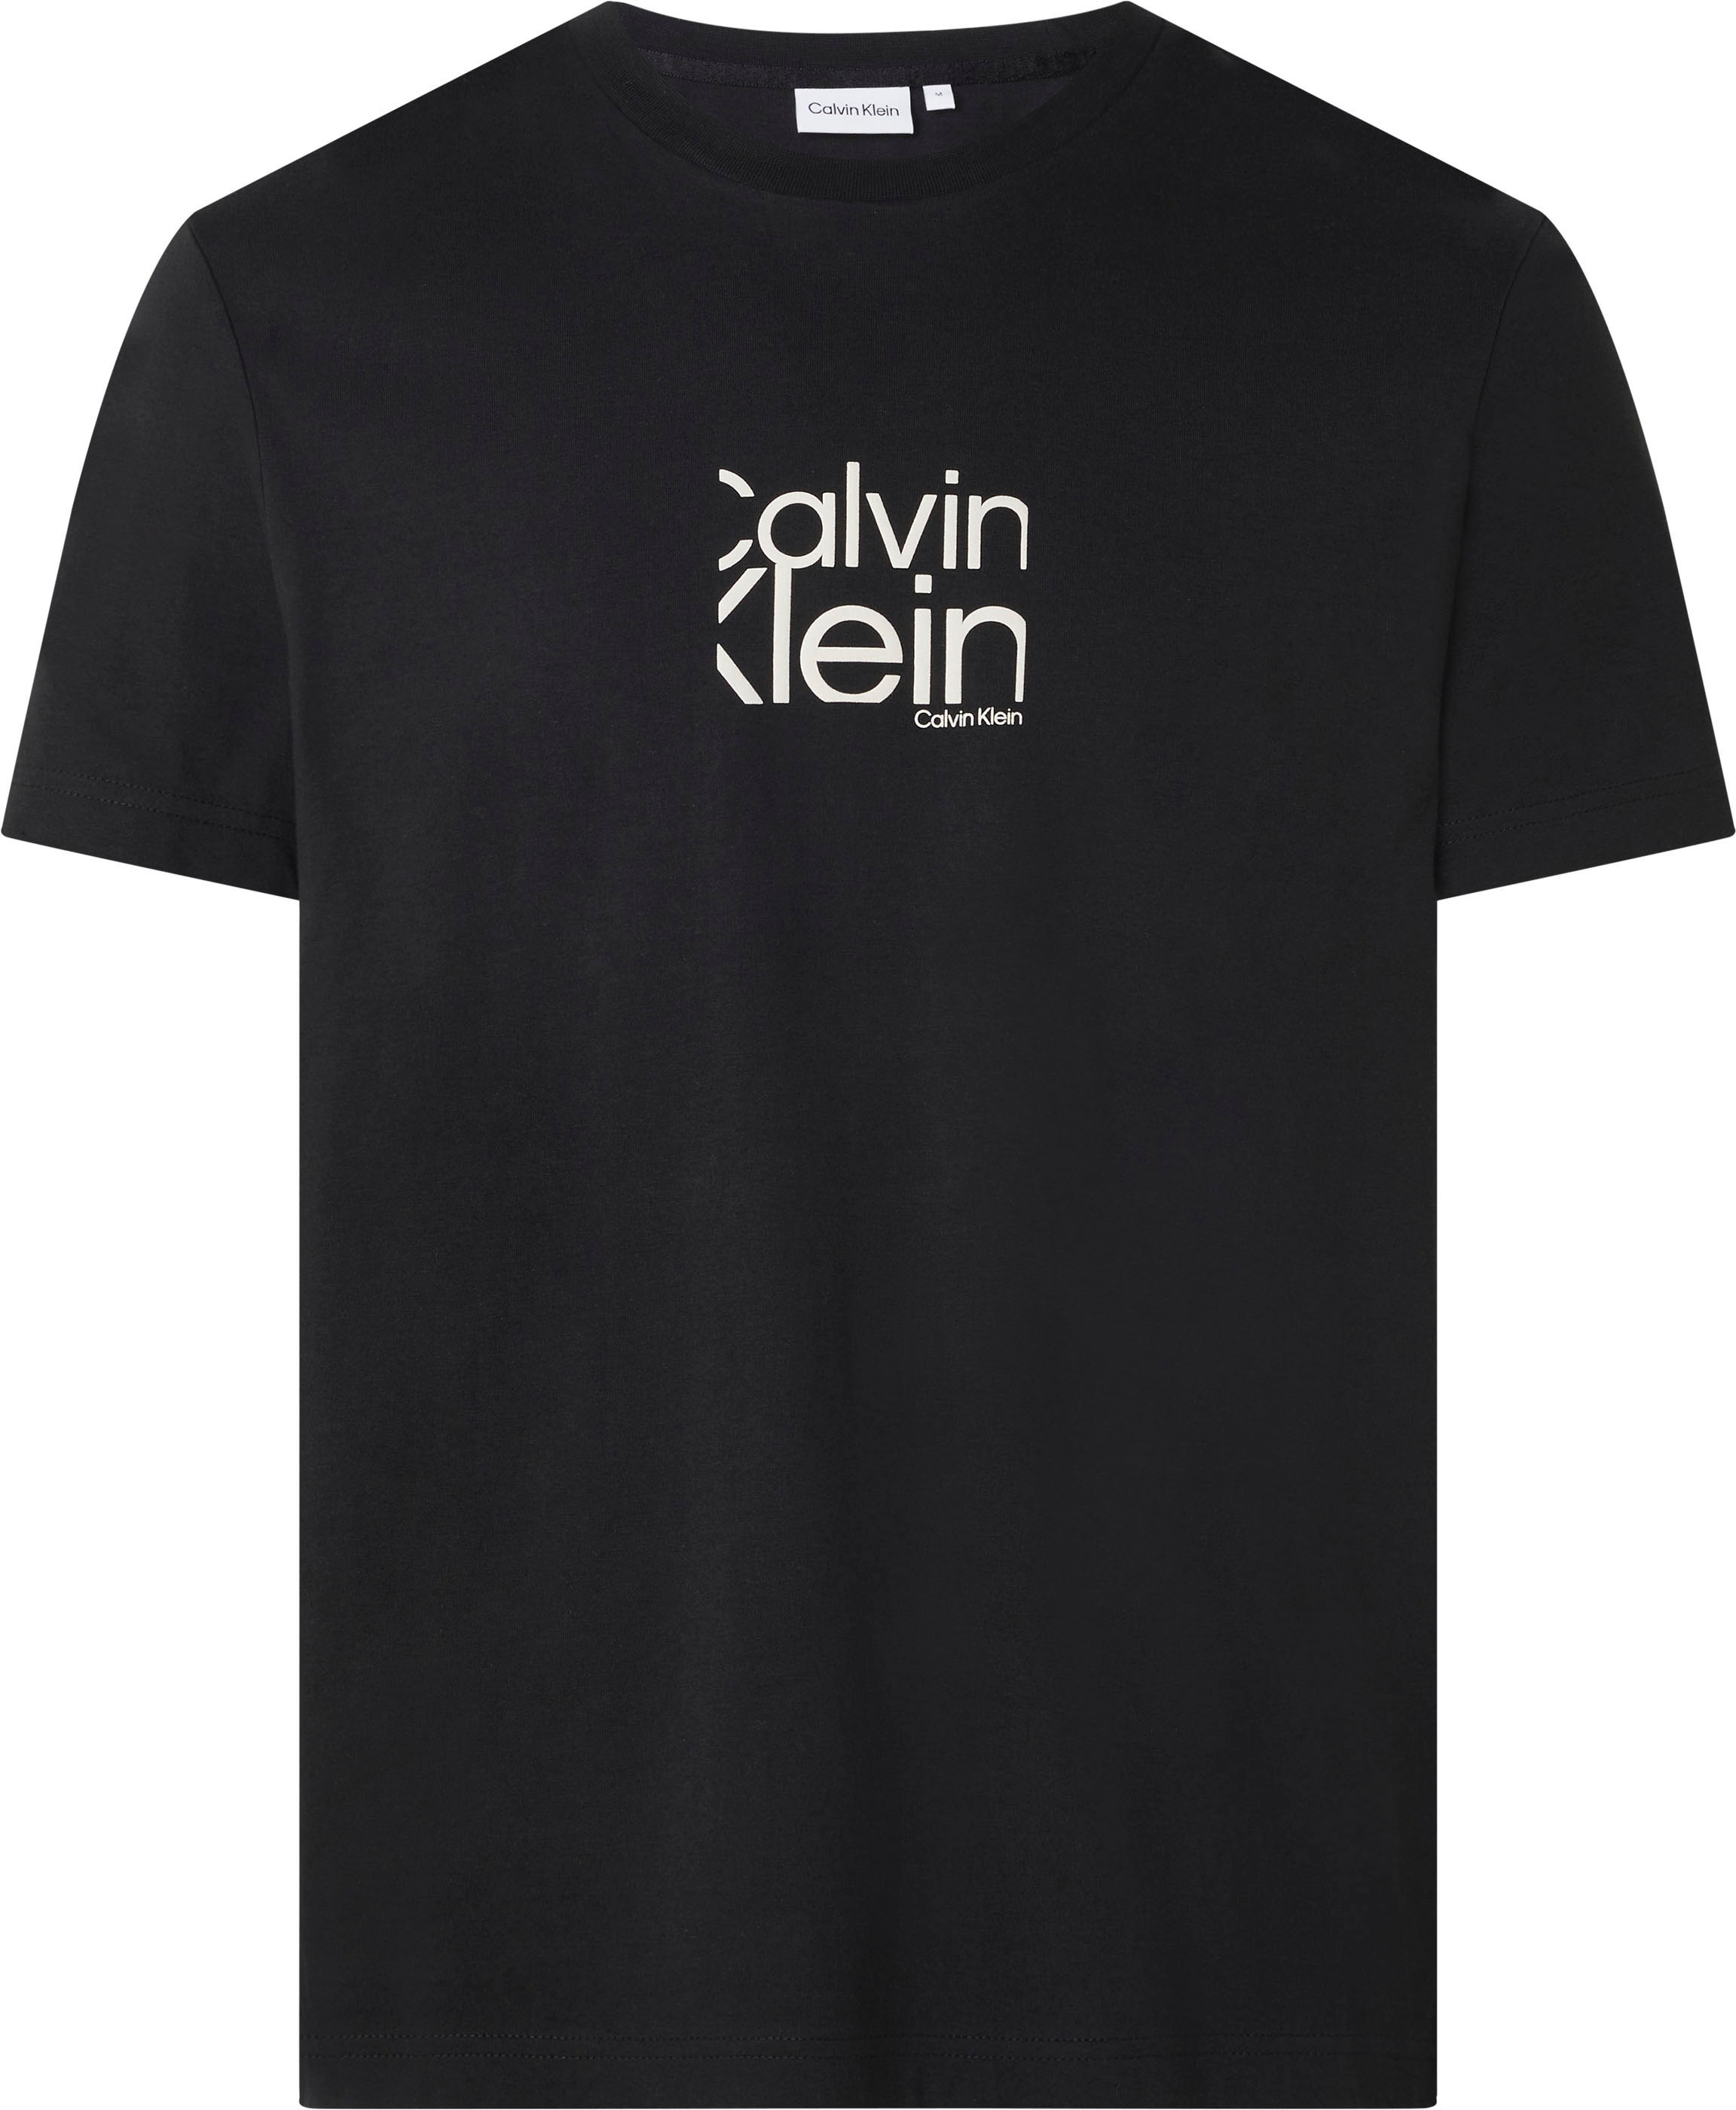 Klein auf online Kurzarmshirt, Calvin der Calvin Brust Klein mit kaufen Logo